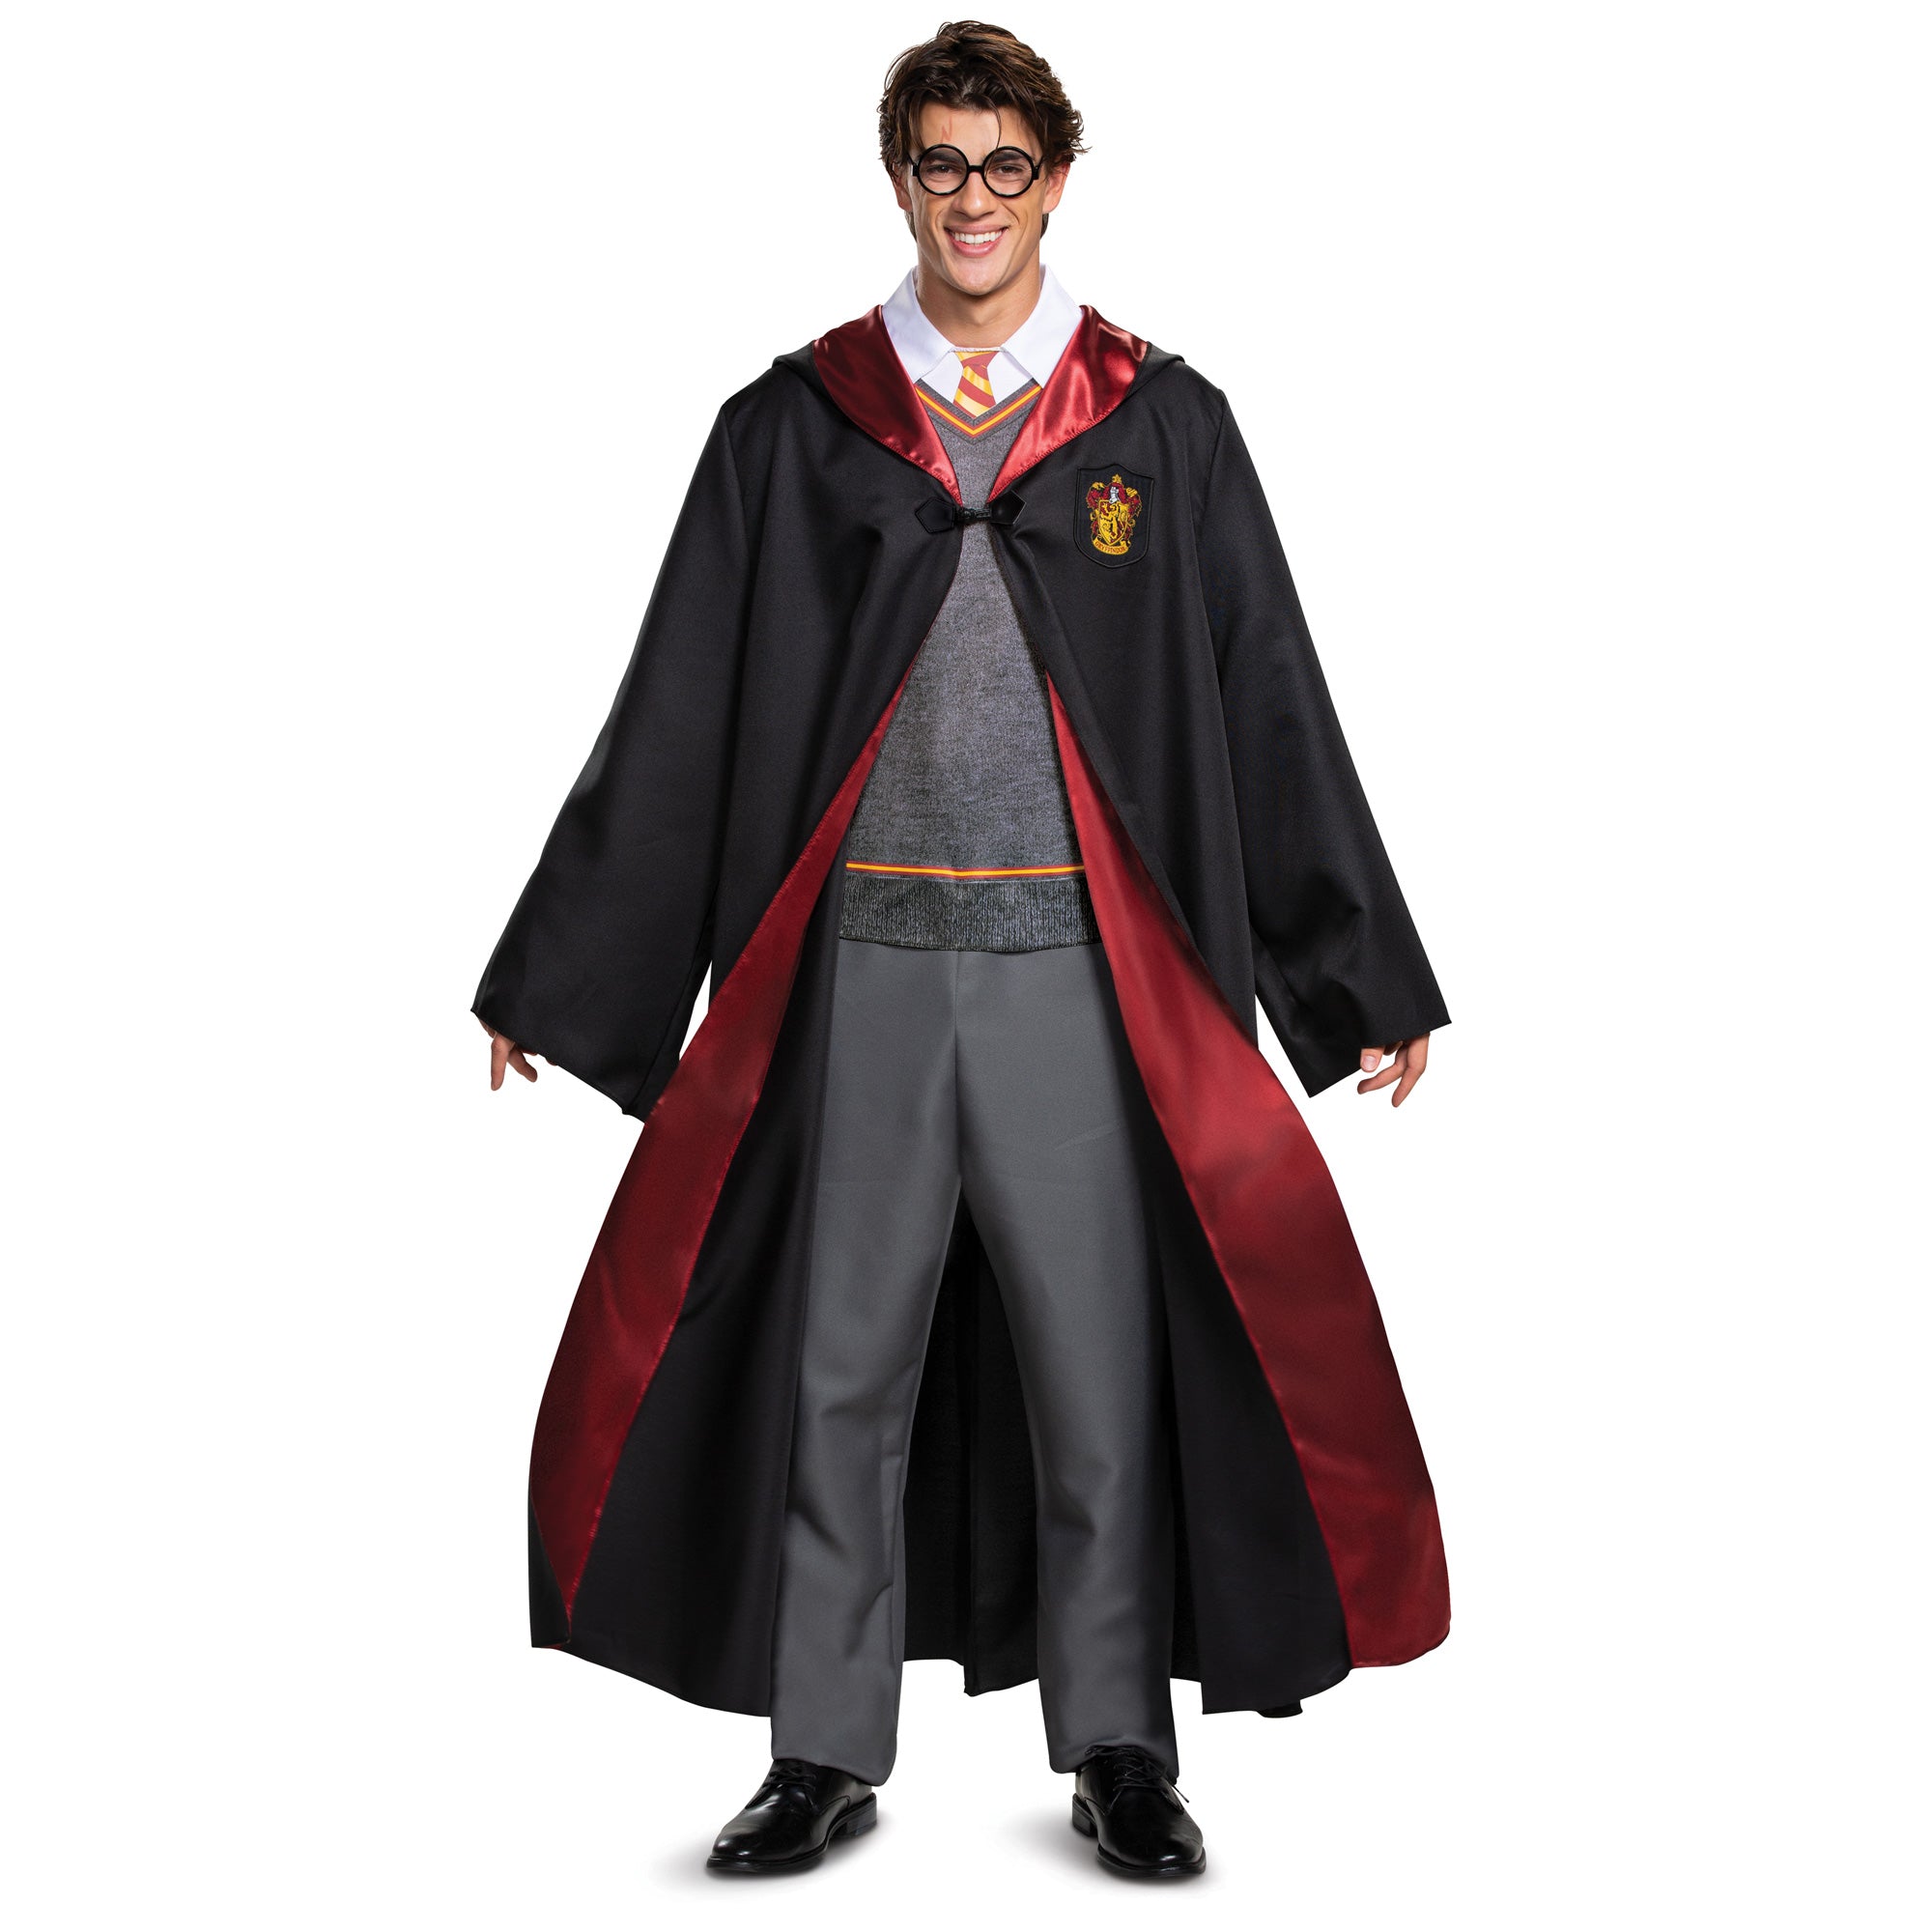 Costume deluxe de Gryffondor pour adultes, Harry potter